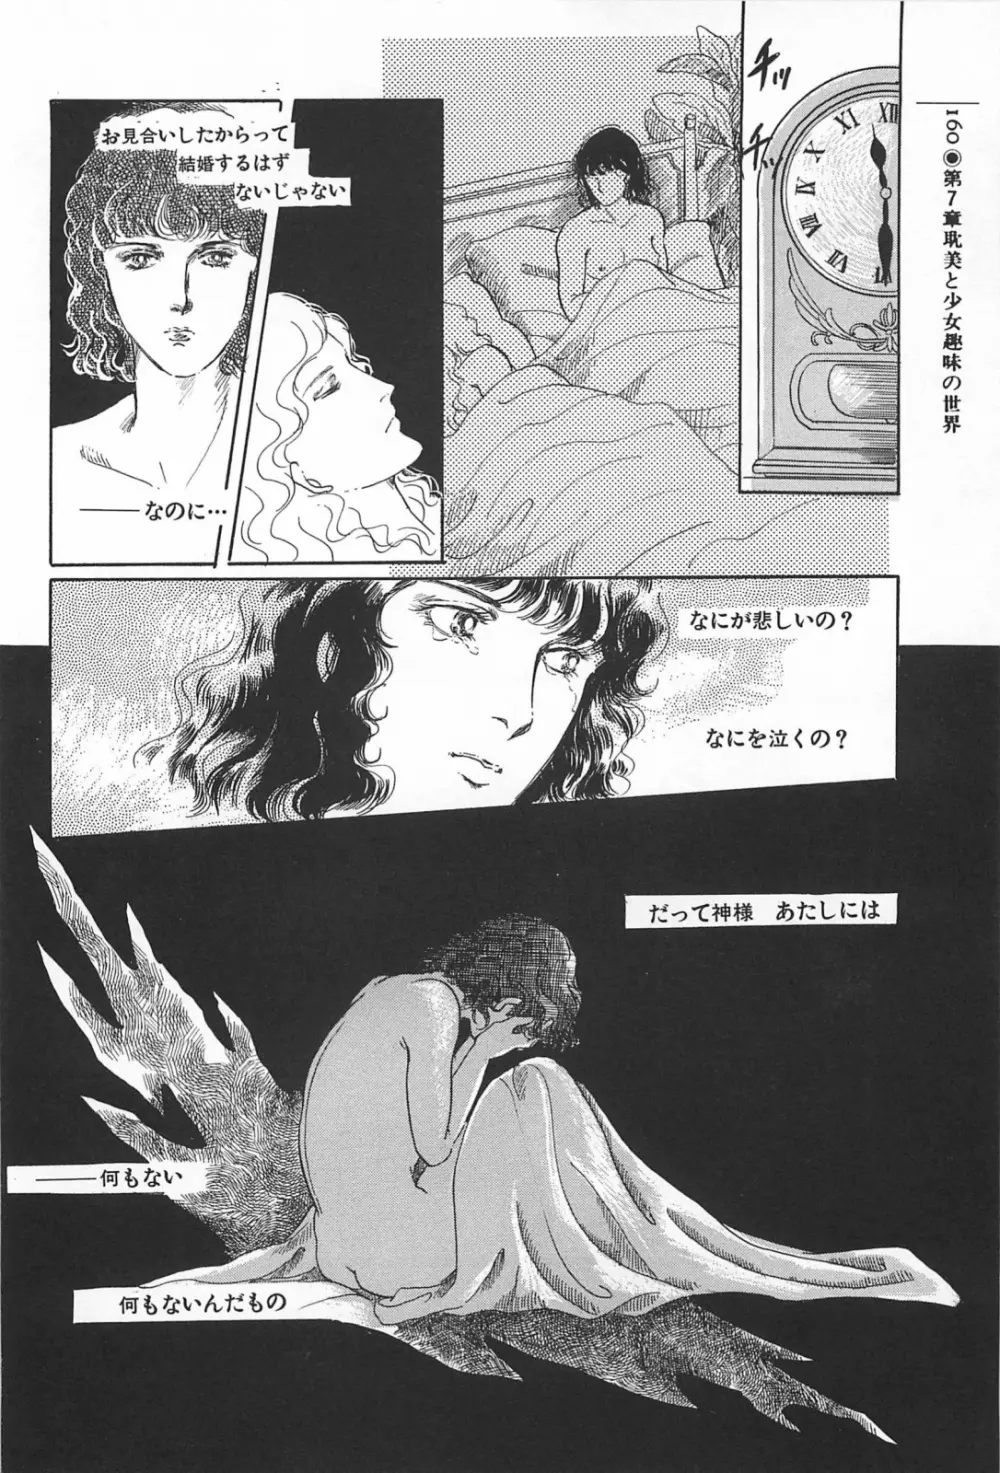 美少女症候群 1985 160ページ